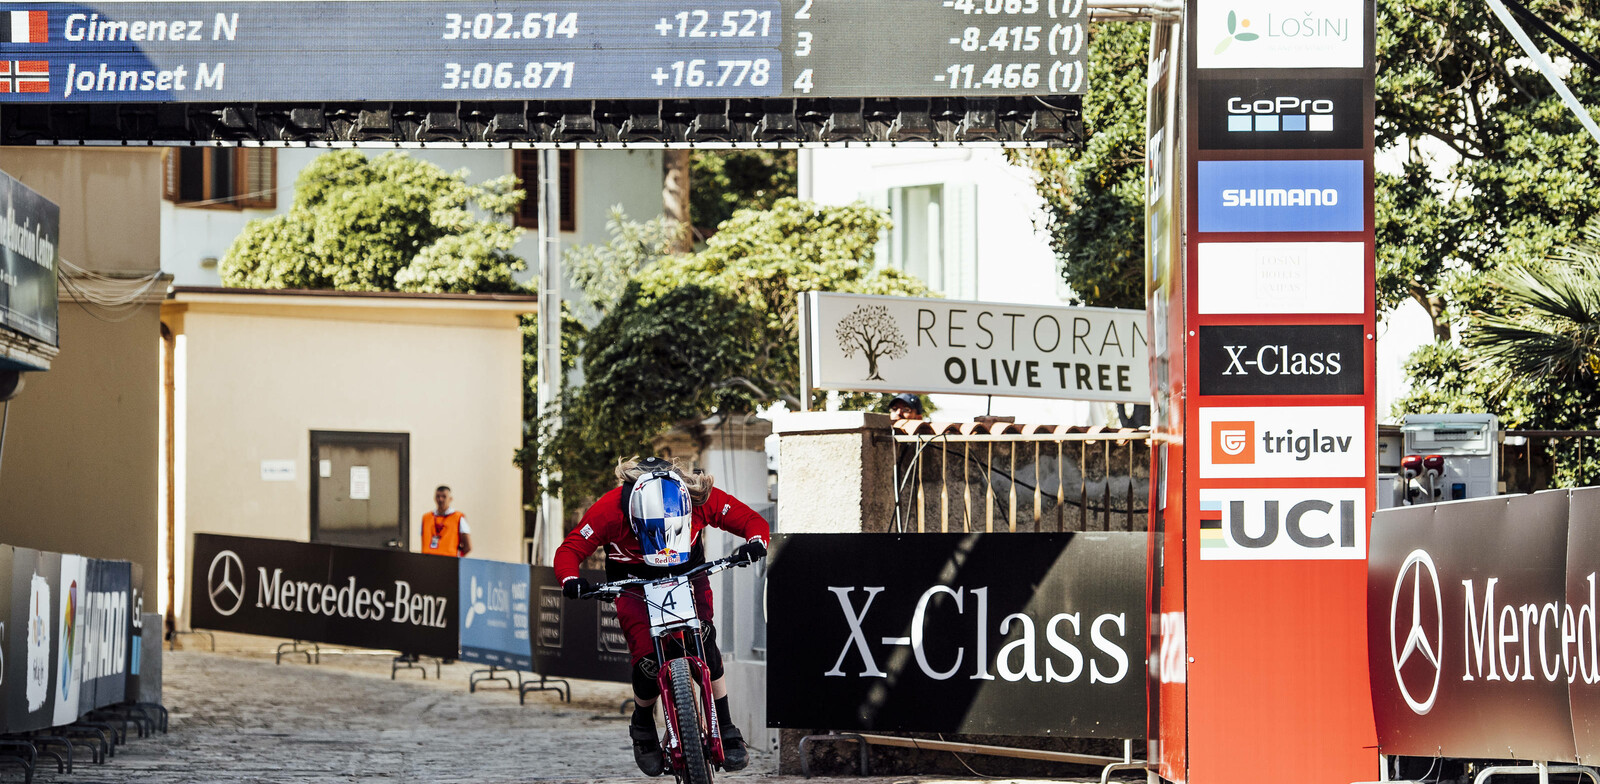 Sieg! Beim ersten Weltcup-Rennen in Kroatien. | © redbullcontentpool/platzer